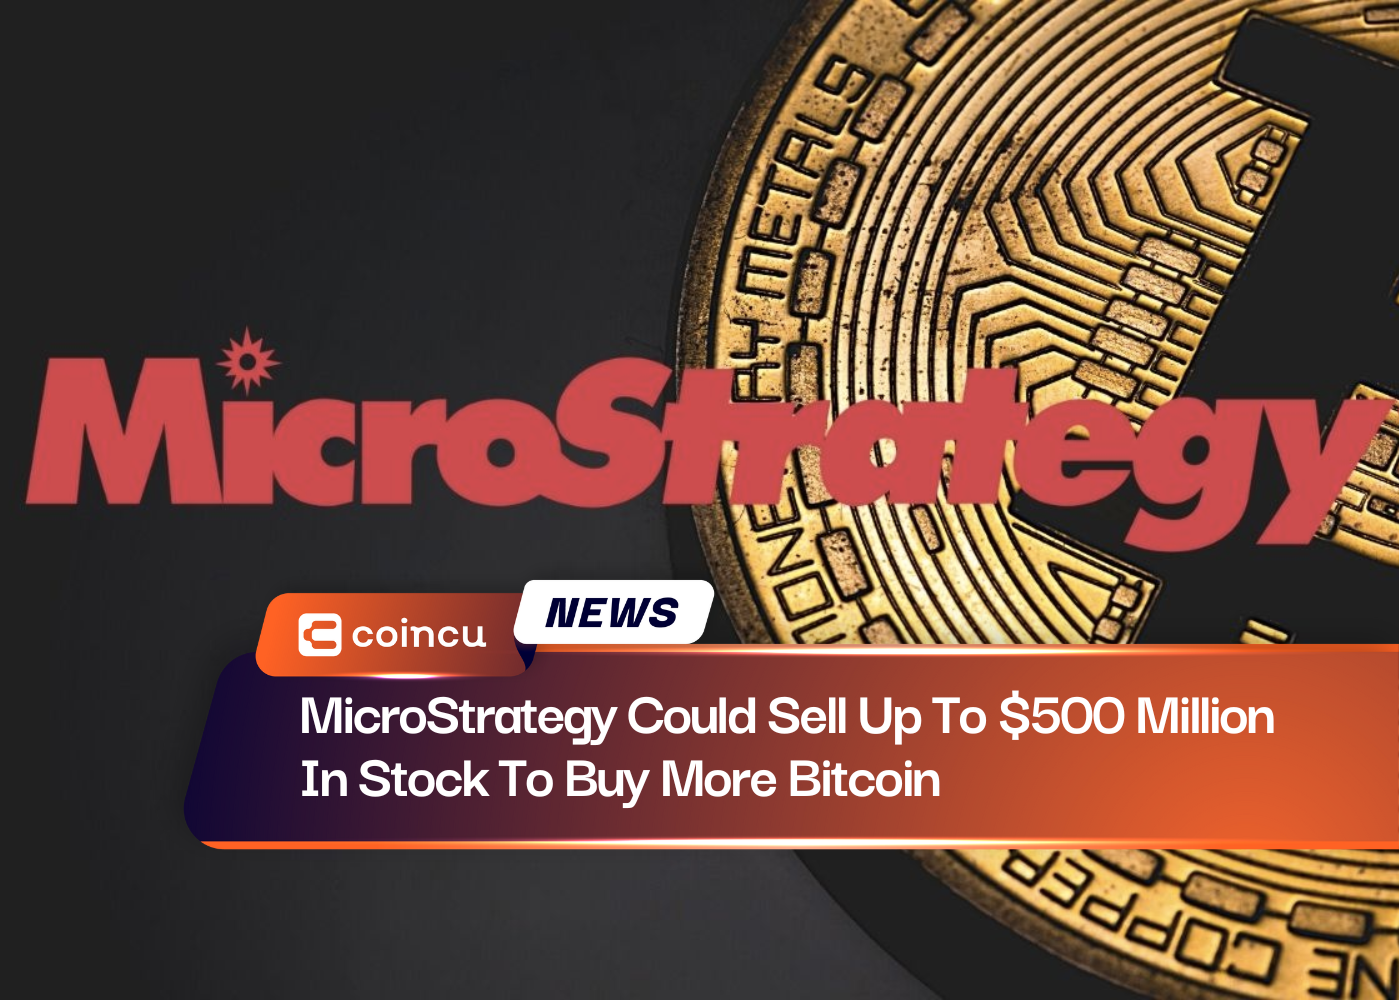 MicroStrategy könnte Aktien im Wert von bis zu 500 Millionen US-Dollar verkaufen, um mehr Bitcoin zu kaufen